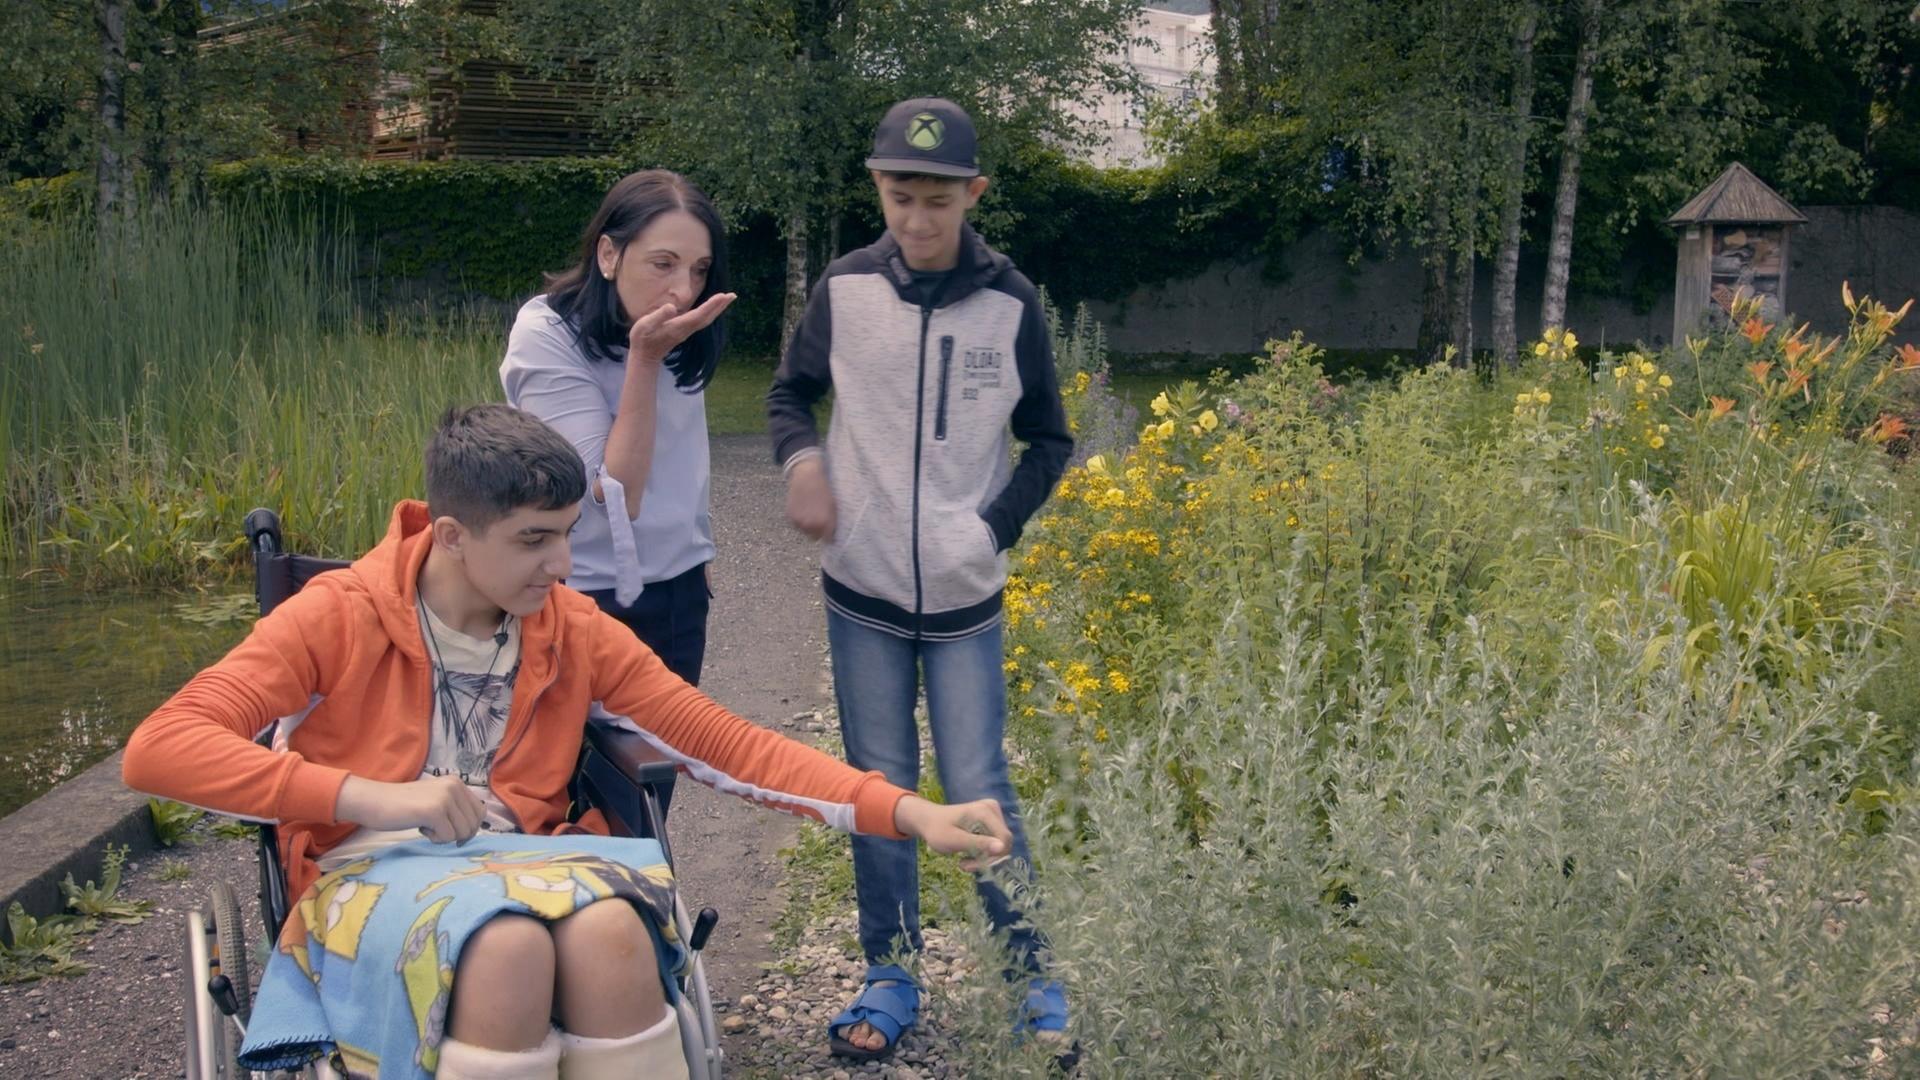 Heidi Ludescher mit zwei Jungs in einem Park mit Wildblumen. Ein Junge mit rosa Jacke sitzt im Rollstuhl.